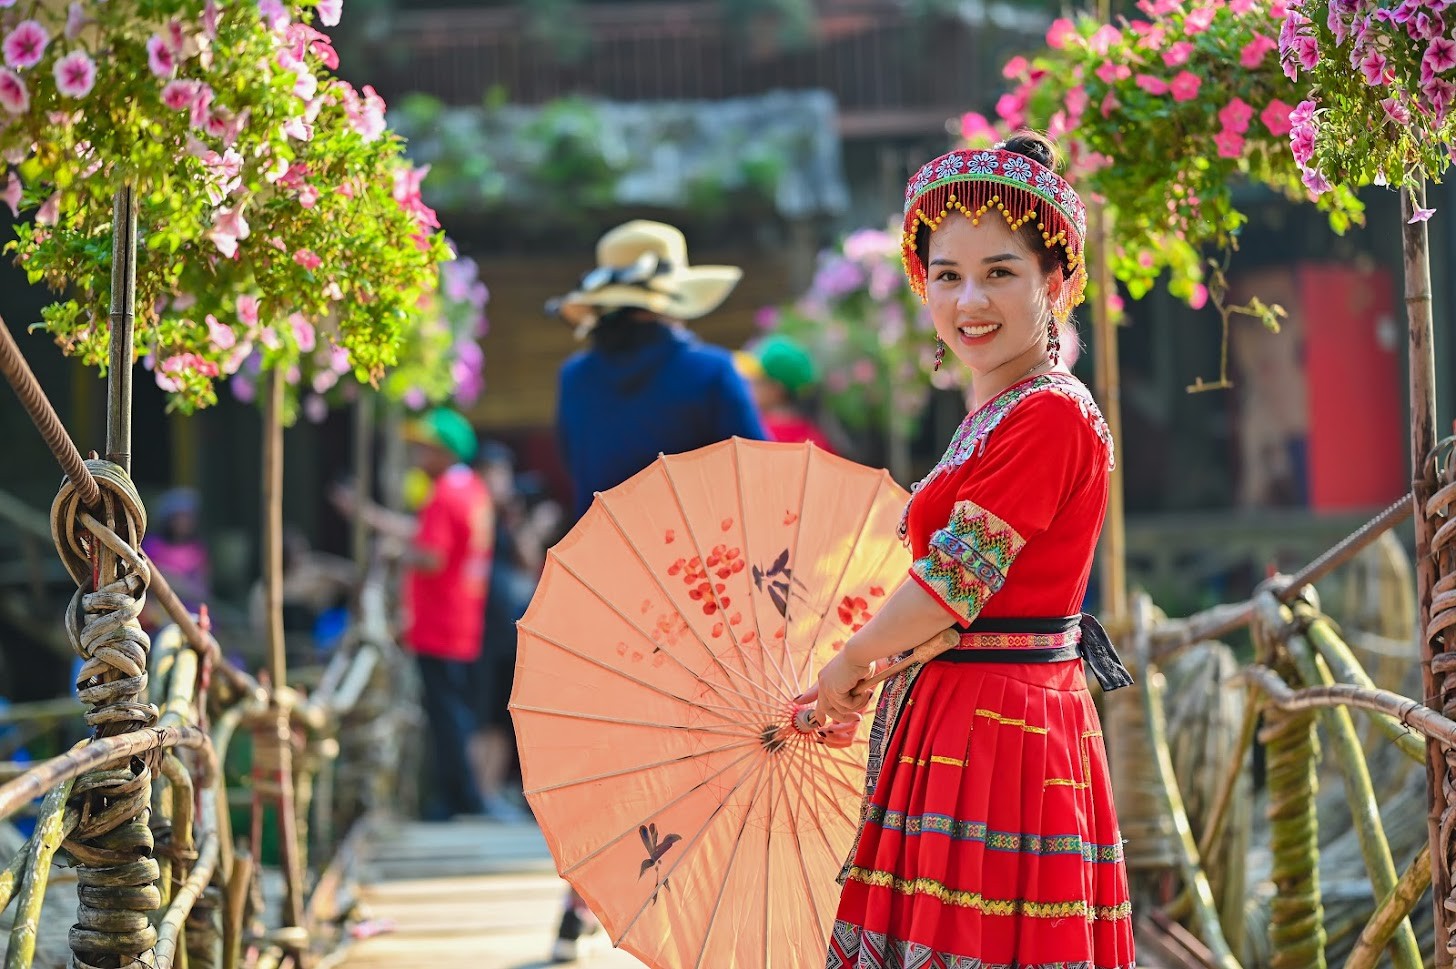 Du lịch Đông Bắc: Đông Bắc Việt Nam năm 2024 là nơi lý tưởng để khám phá những nét đẹp hoang sơ của thiên nhiên, văn hóa đặc sắc của các dân tộc địa phương. Du khách có thể trải nghiệm cuộc sống của người dân địa phương, thực hiện các hoạt động trekking, leo núi và thưởng thức ẩm thực đặc trưng tại địa phương.